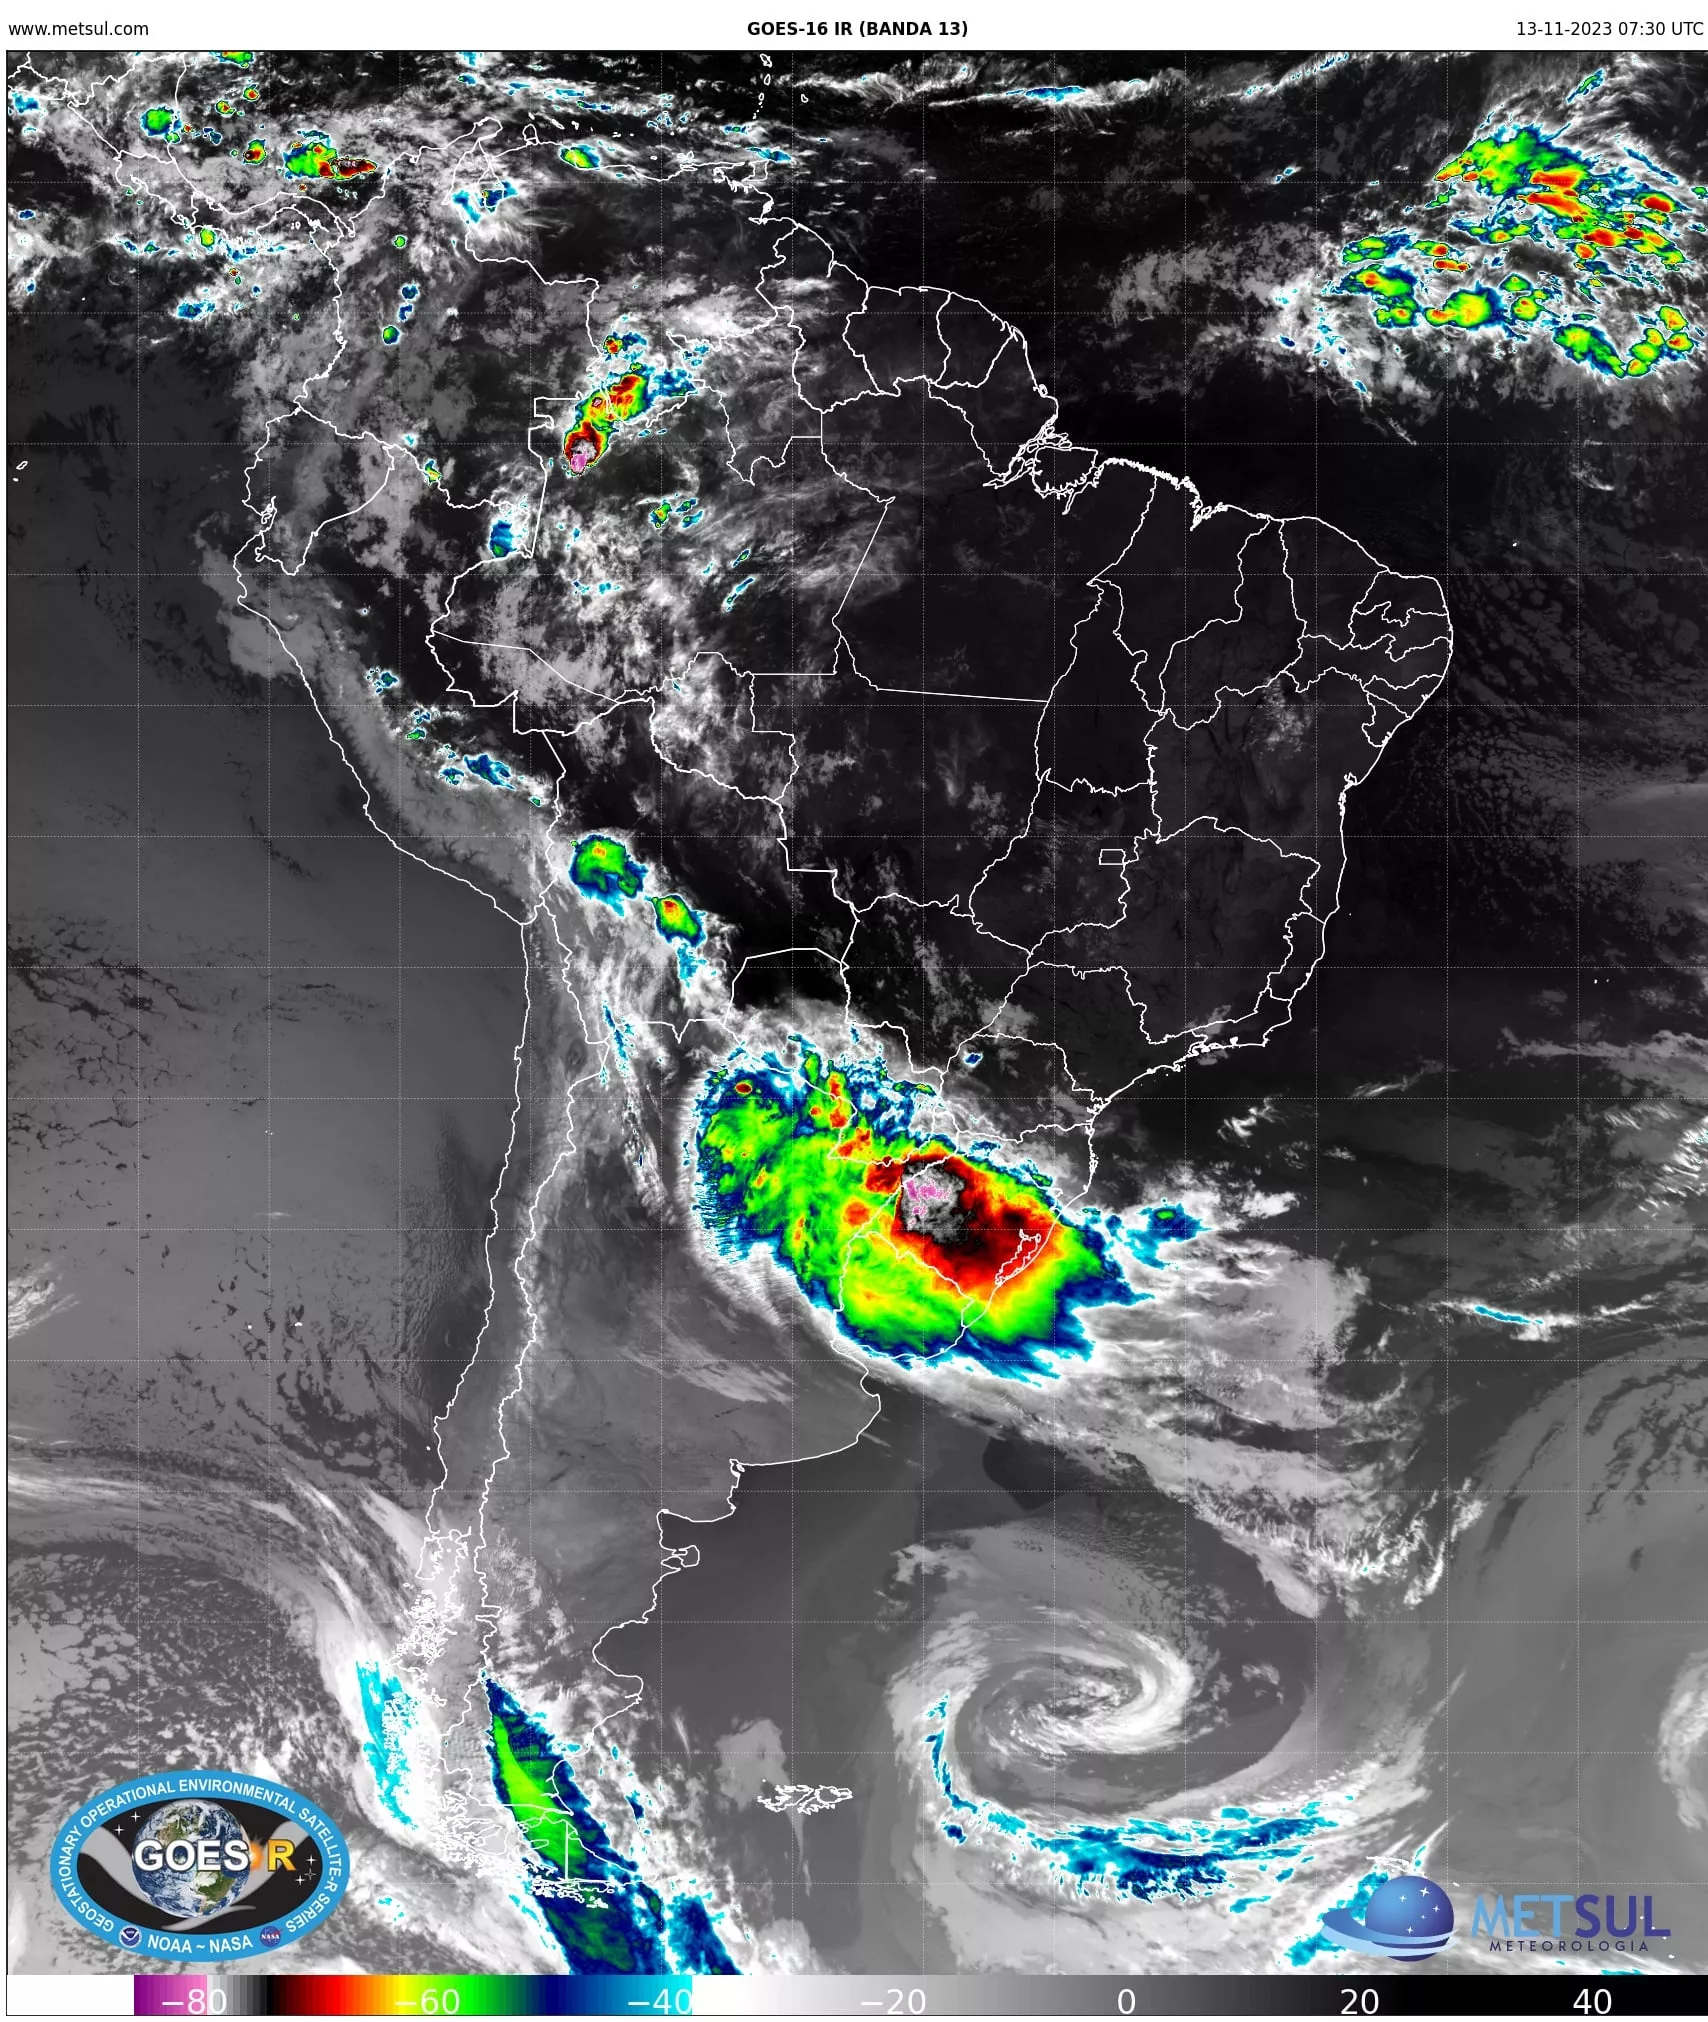  Especialistas alertam para chuva torrencial no Sul do Brasil nesta segunda (13) 